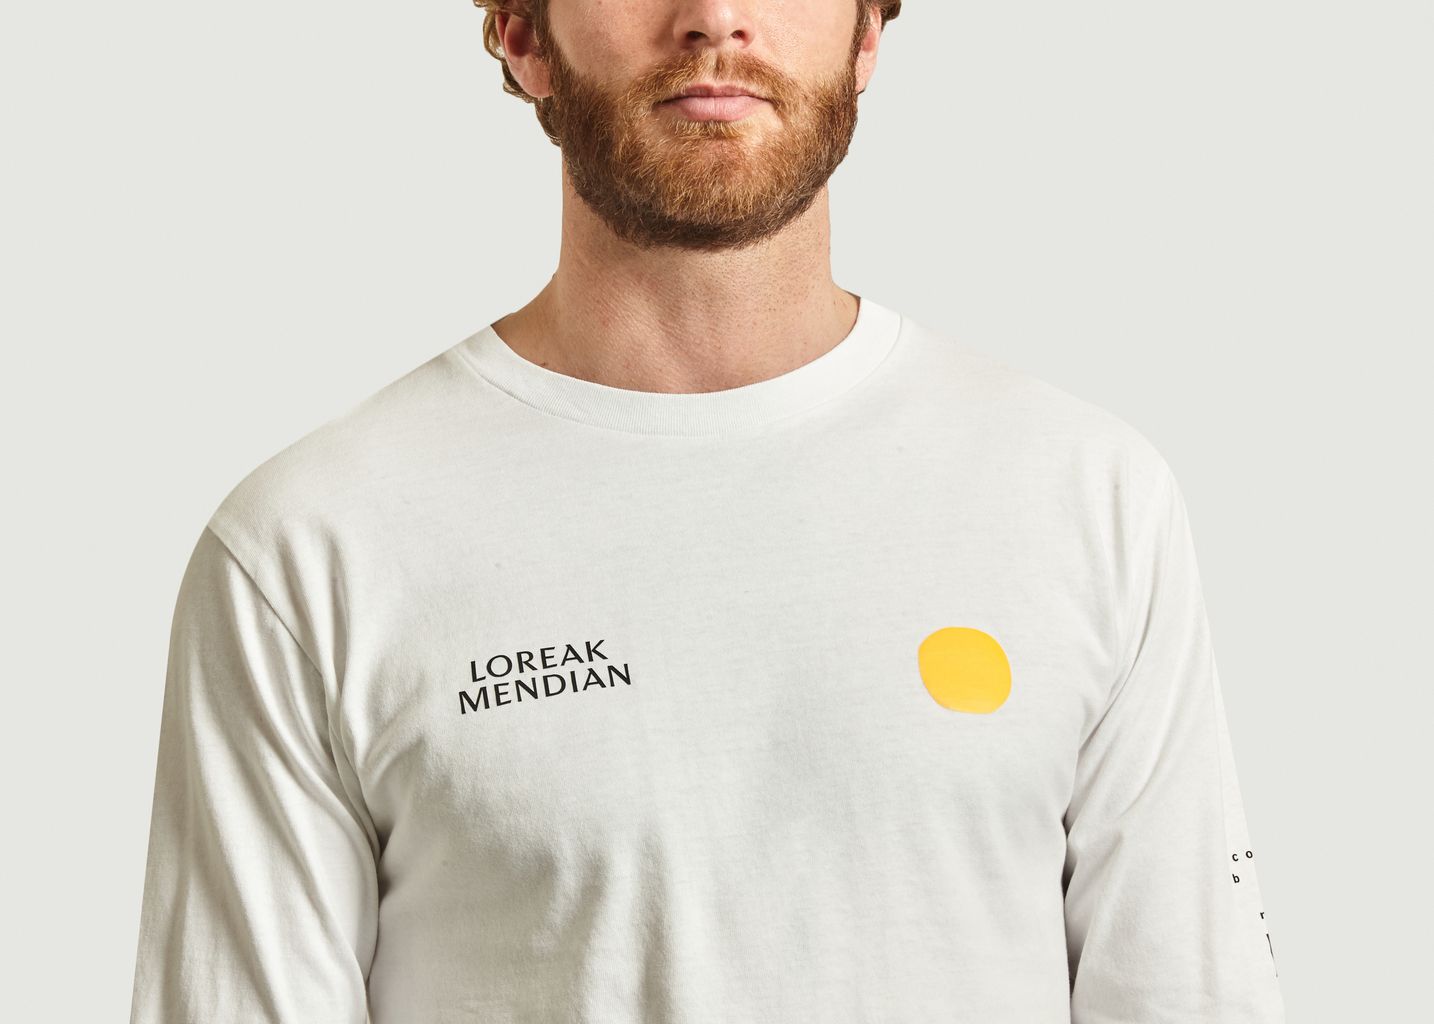 Dot Land printed t-shirt - Loreak Mendian